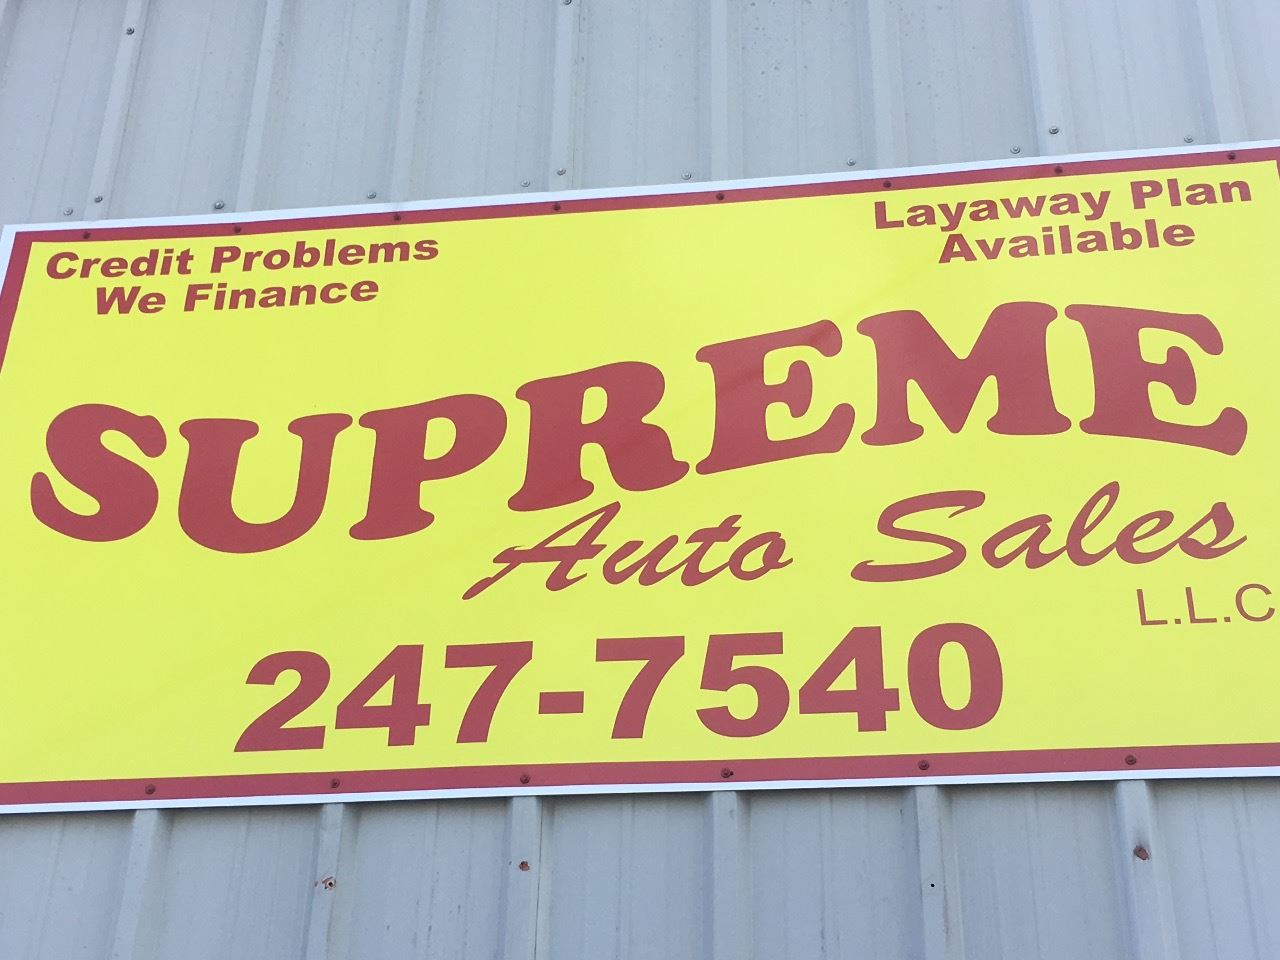 Supreme Auto Sales